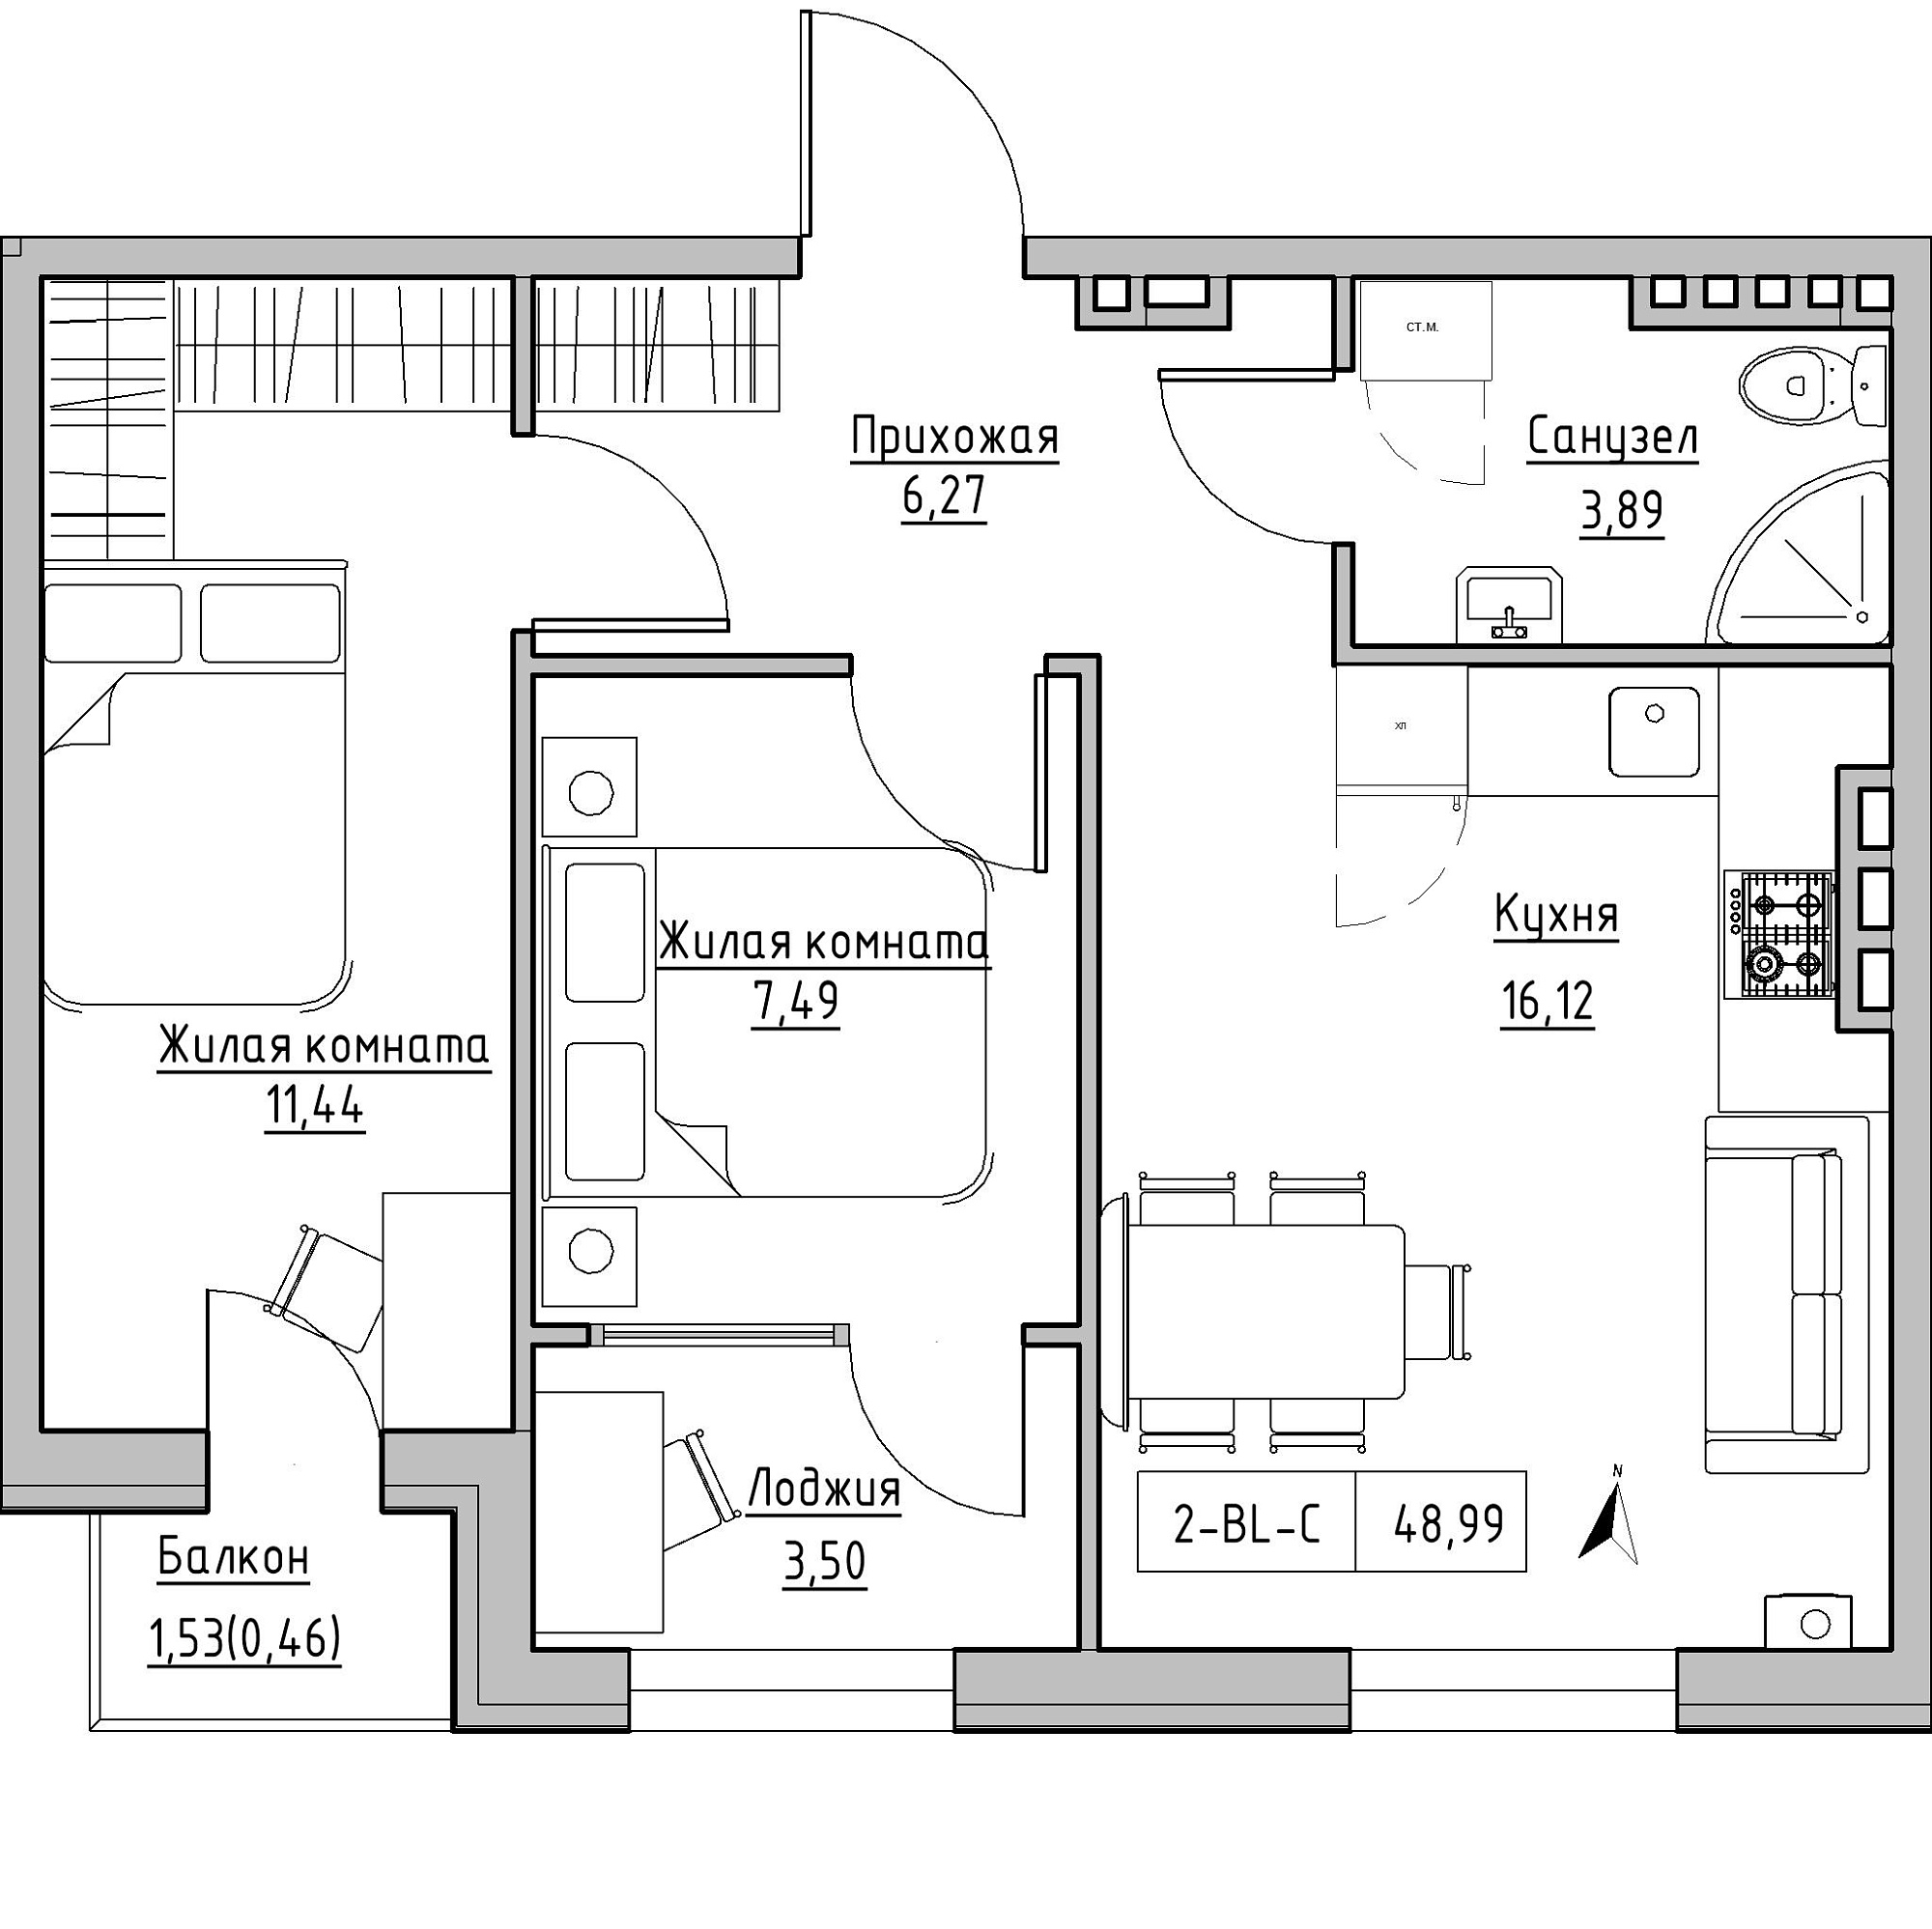 Планування 2-к квартира площею 48.99м2, KS-024-04/0009.